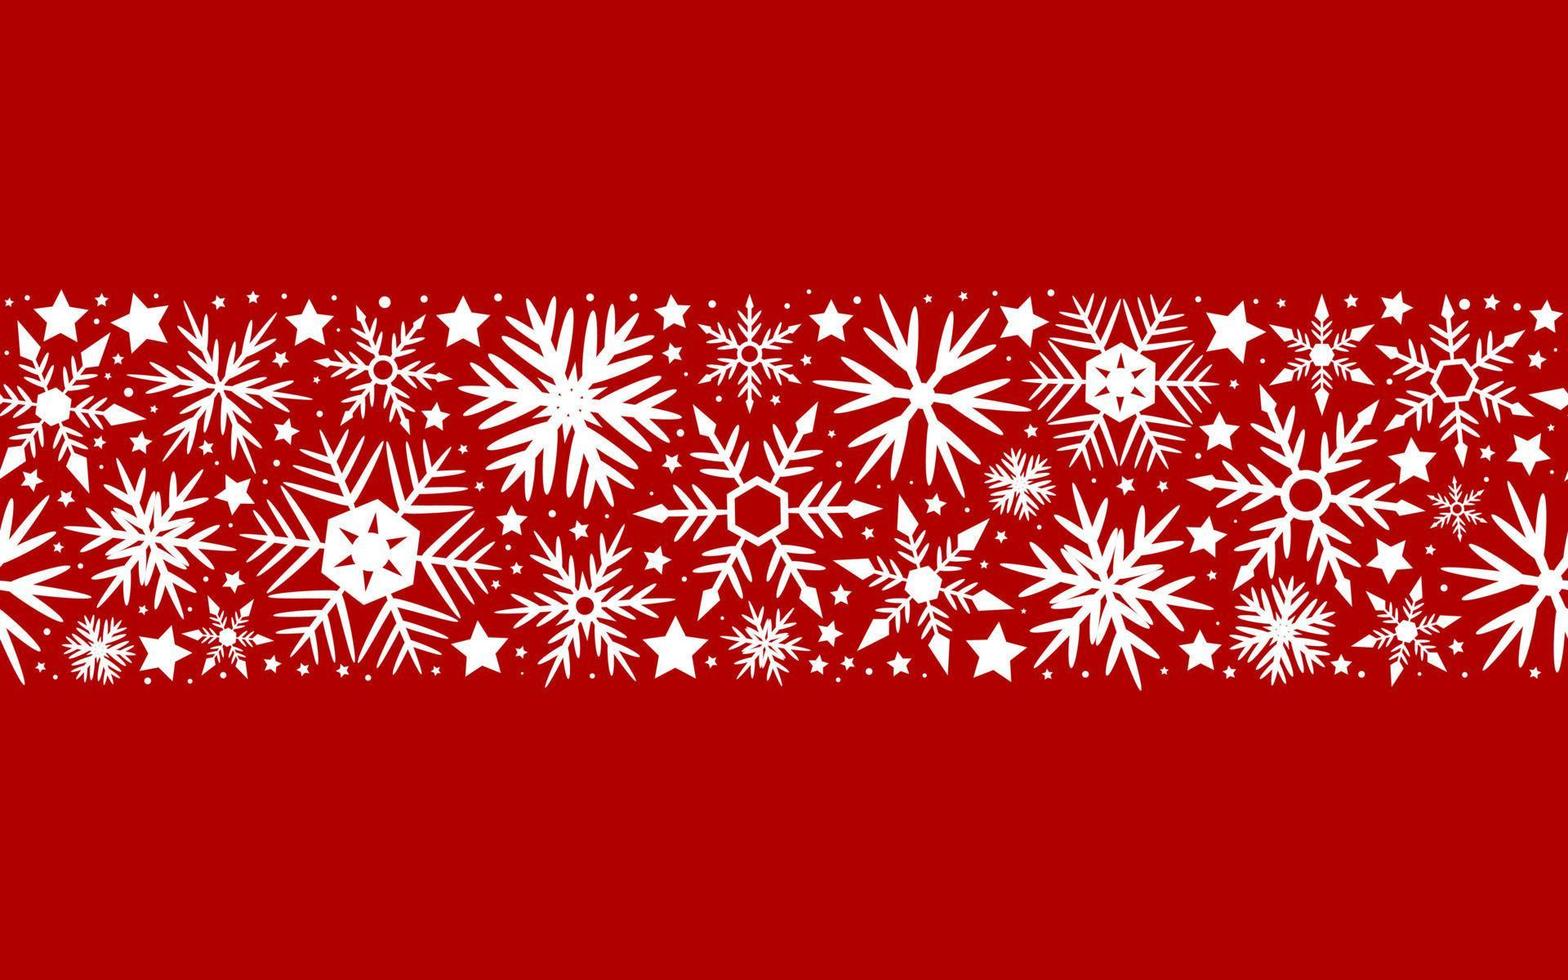 padrão perfeito de flocos de neve para decoração de decoração de natal e design vetor